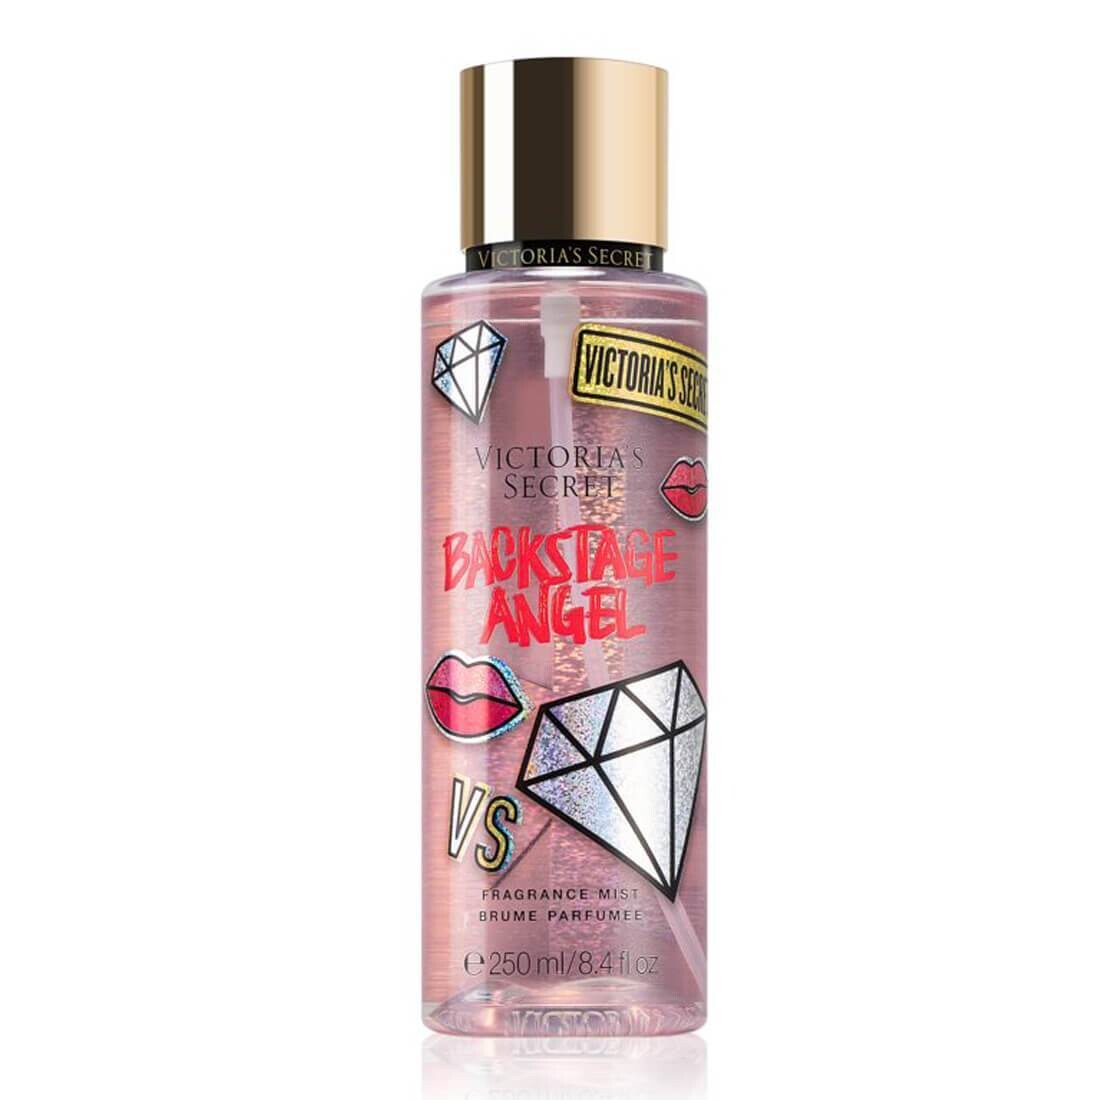 Victoria’s Secret Backstage Angel Fragrance Mist 250ml